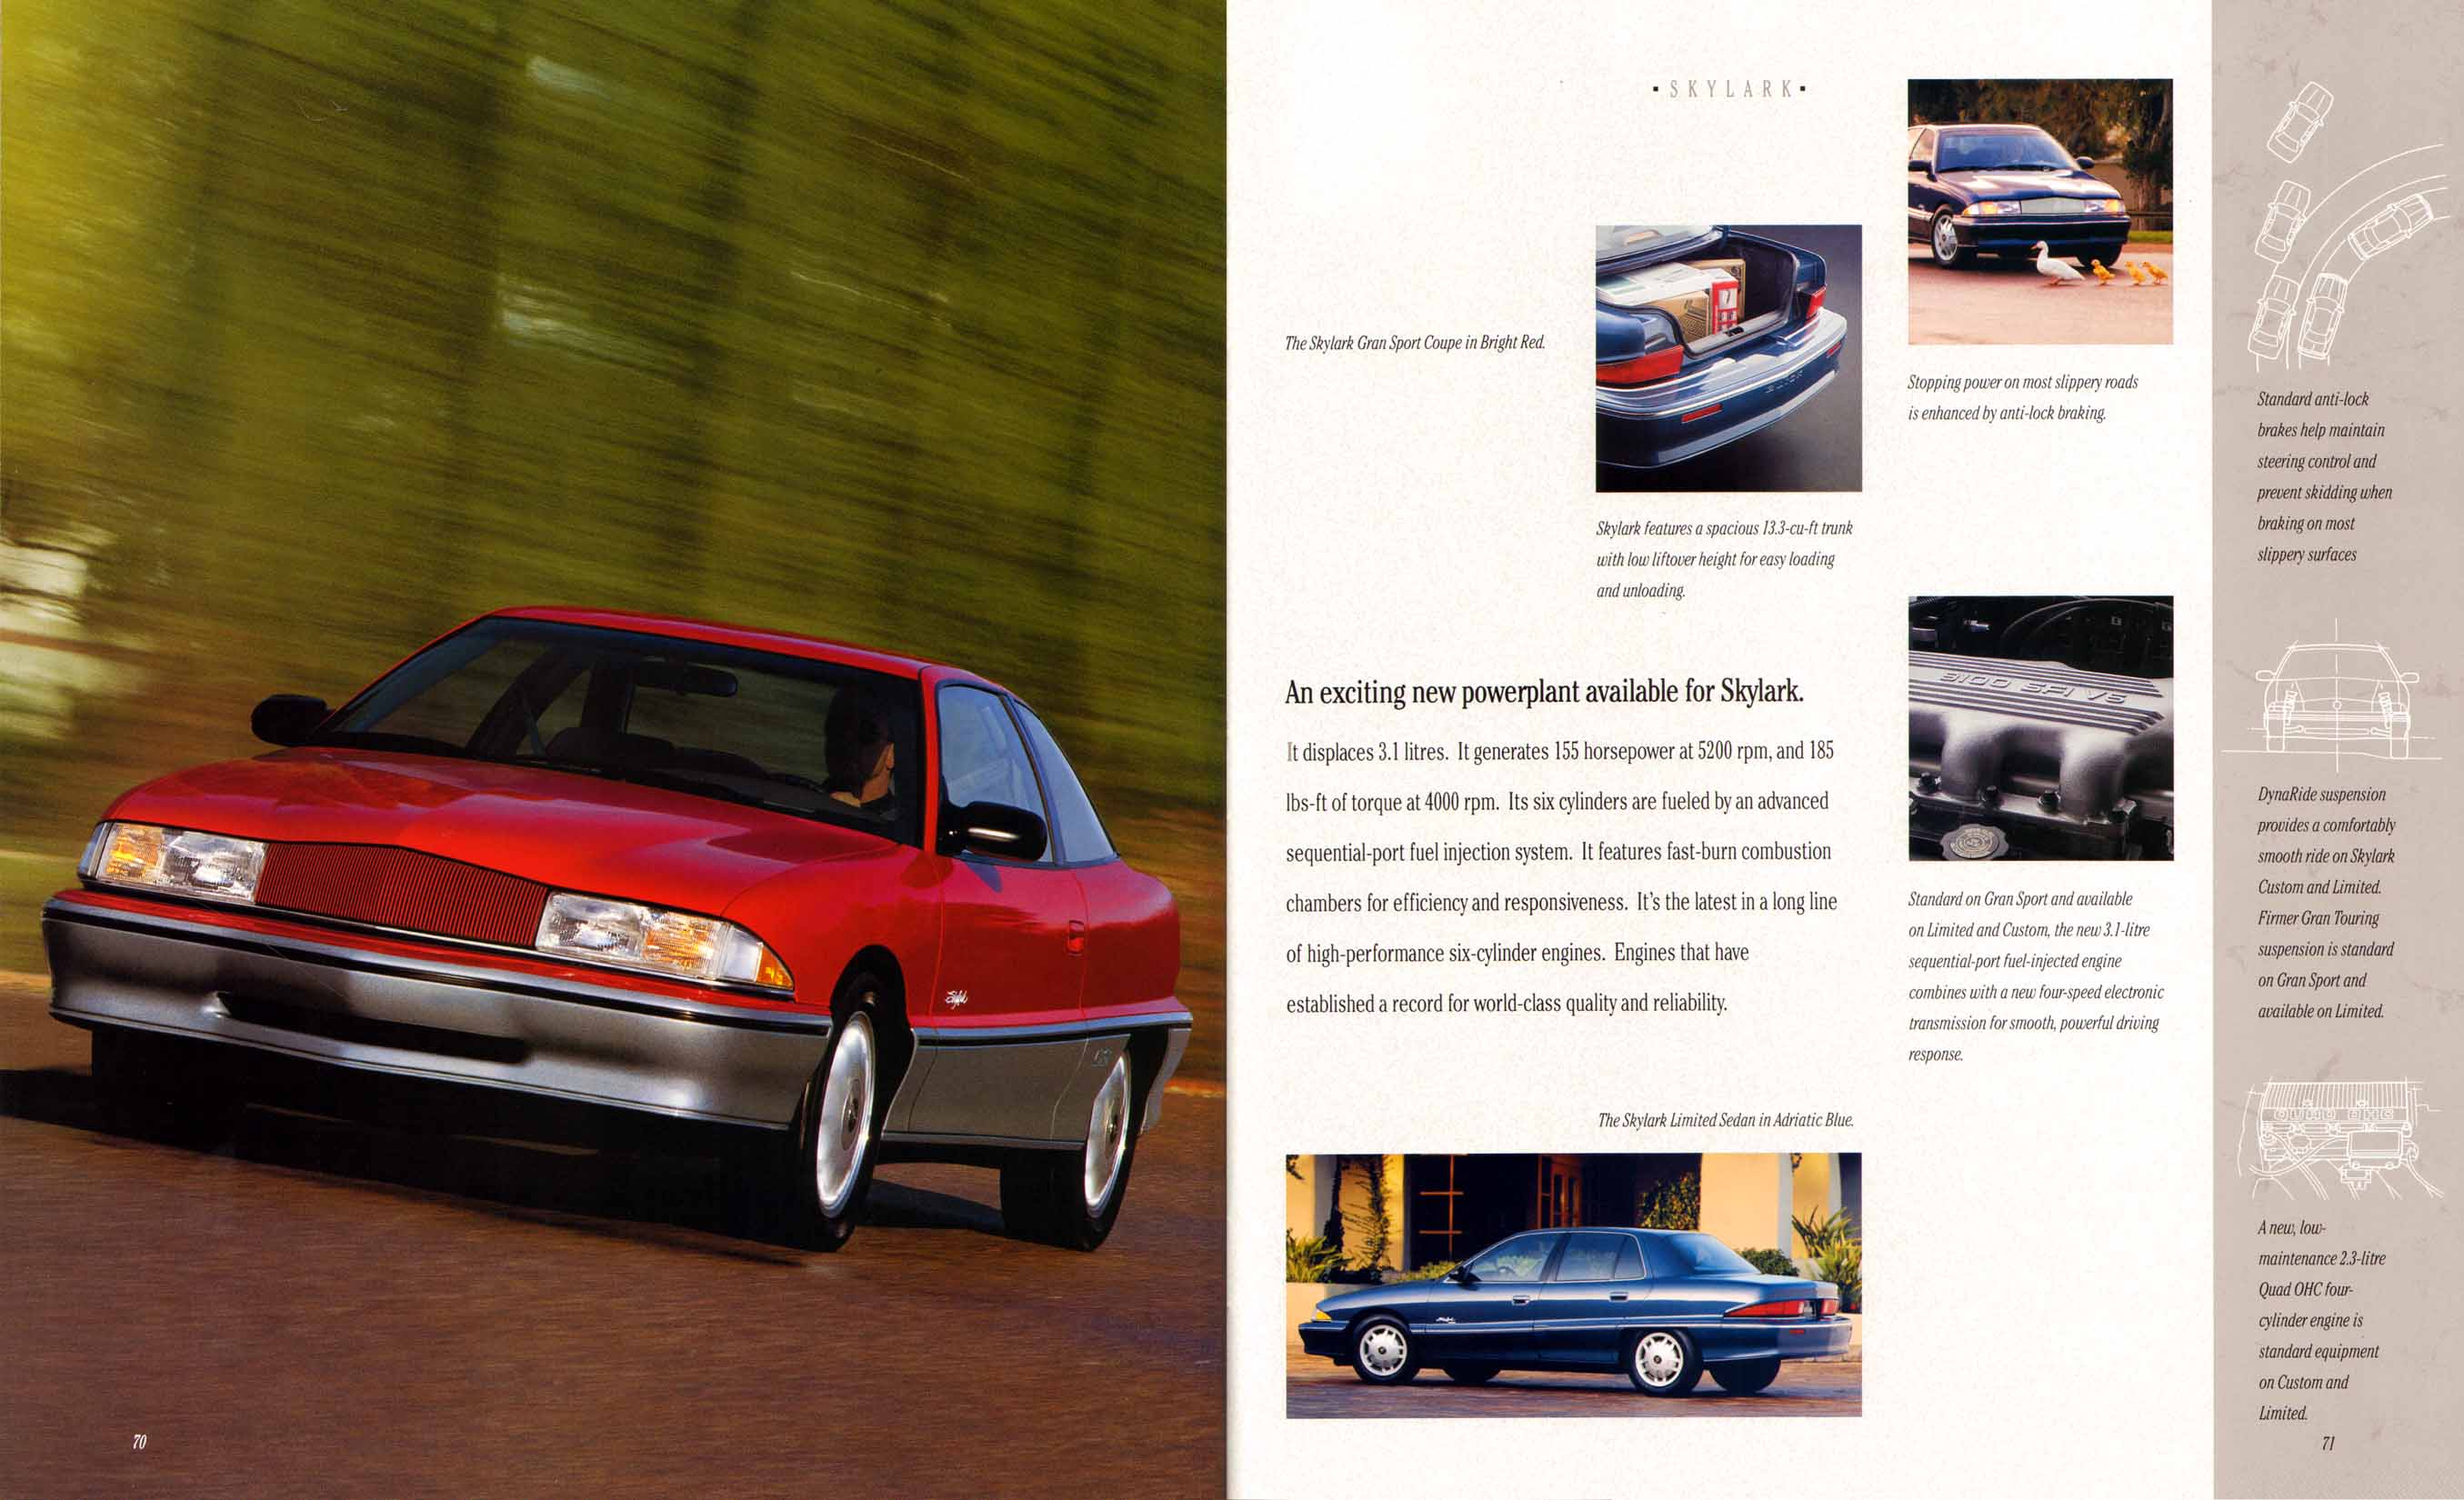 1994 Buick Full Line Prestige-72-73